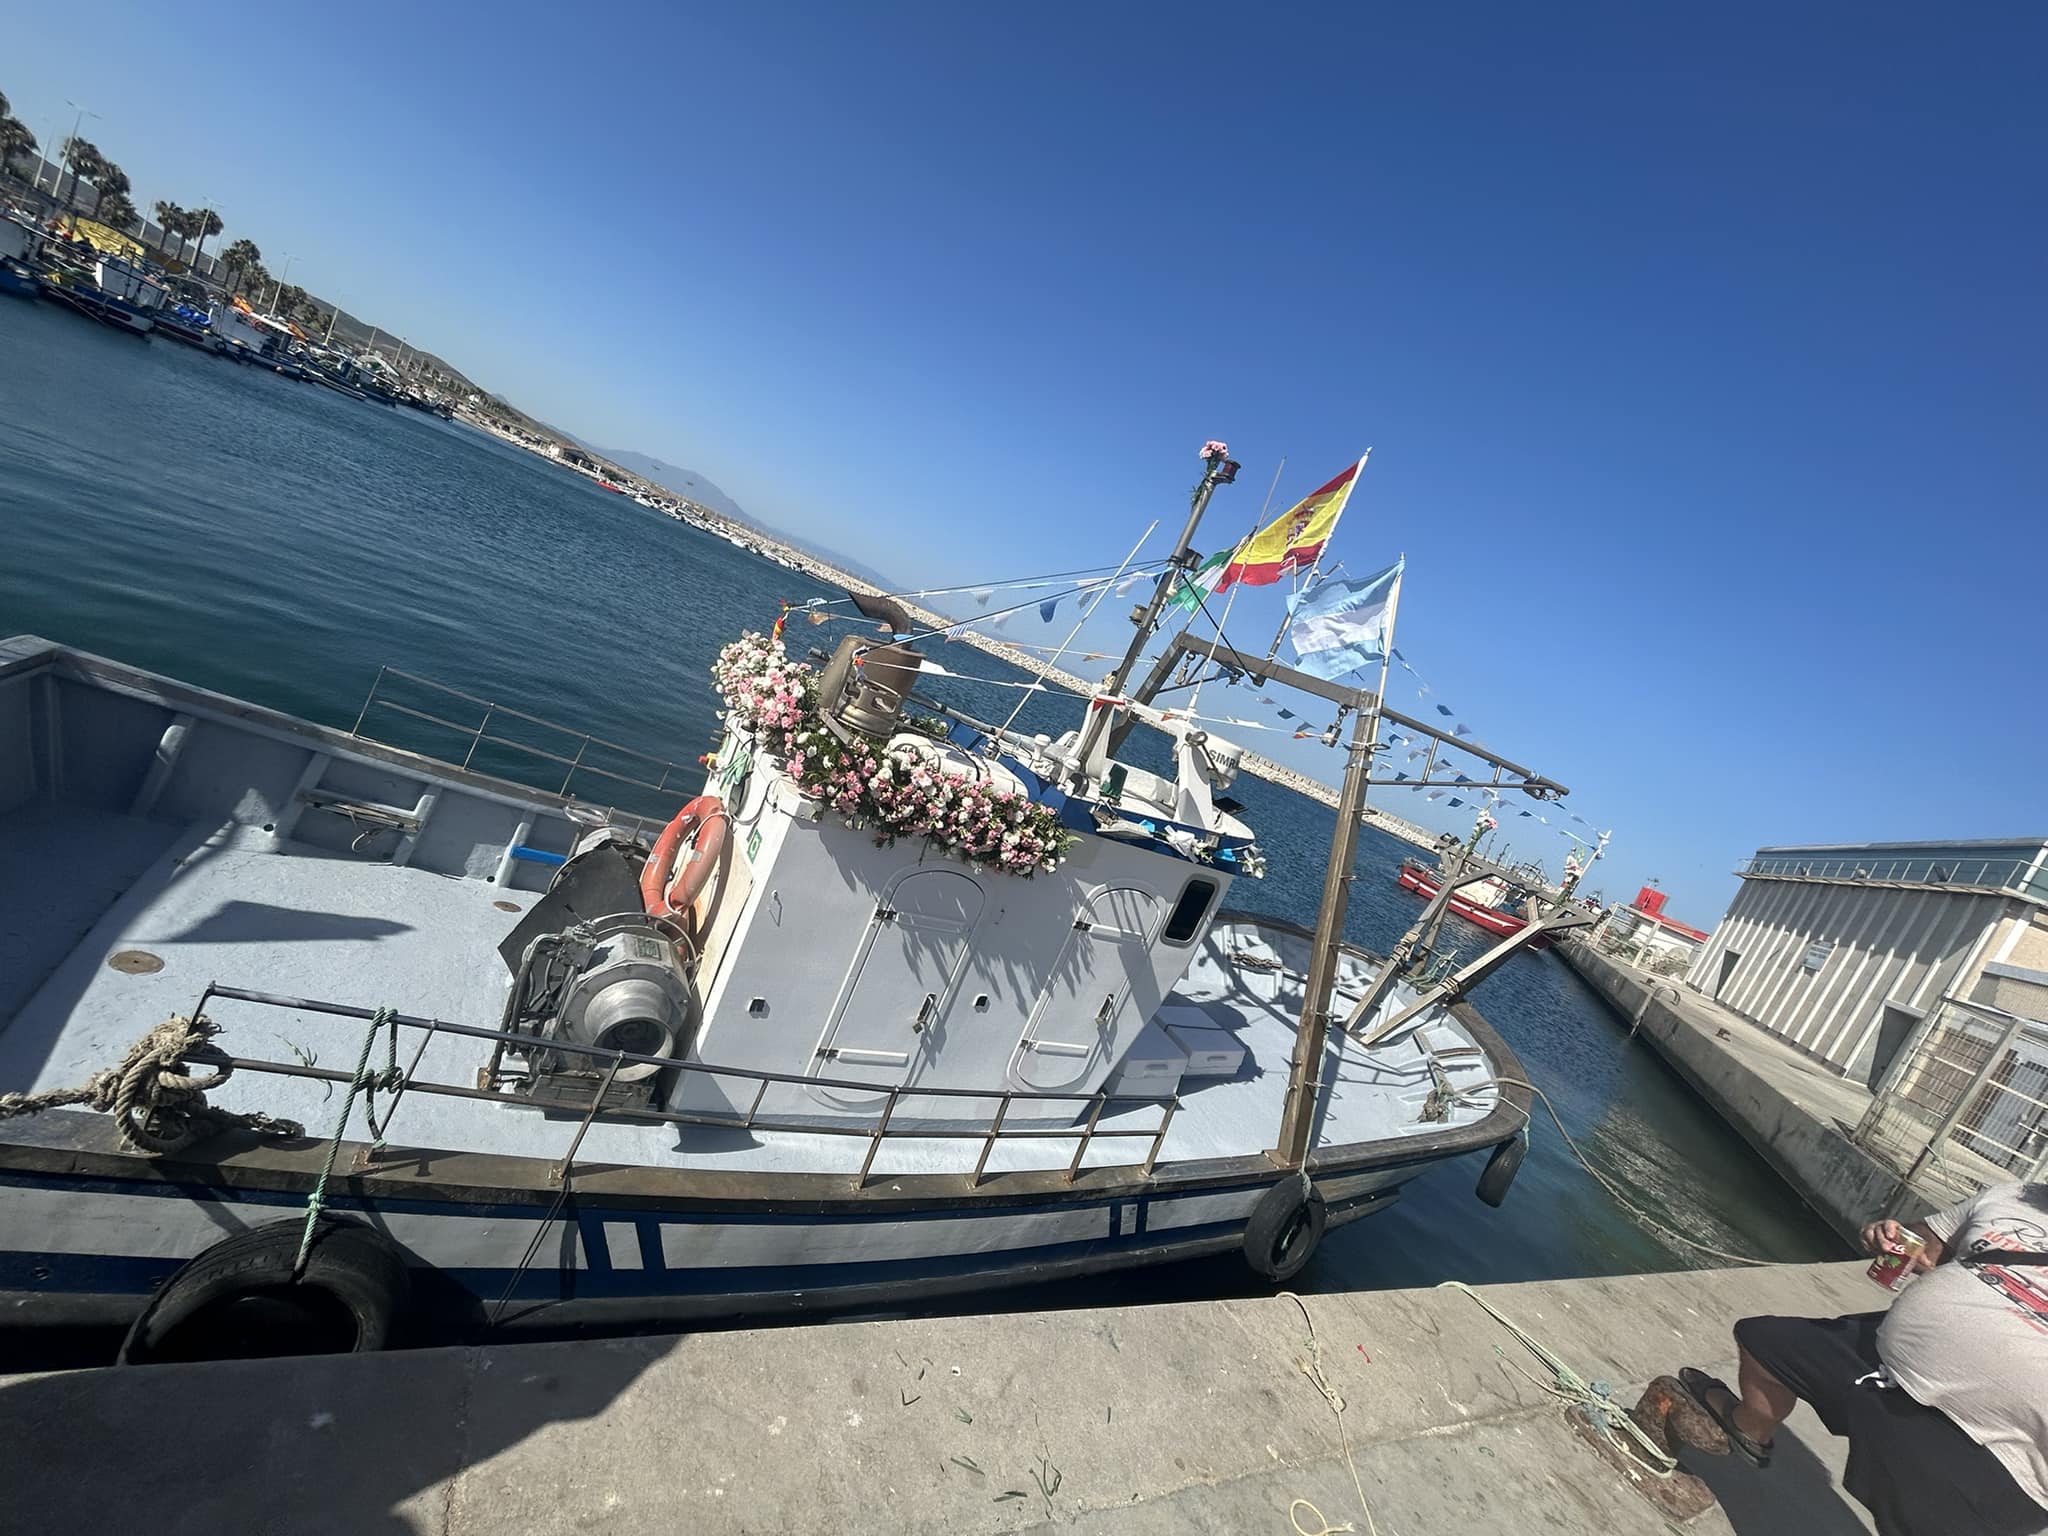 La hija del patrón: "La Virgen ha salido en todos los puertos andaluces; es una vergüenza lo que han hecho en La Línea"